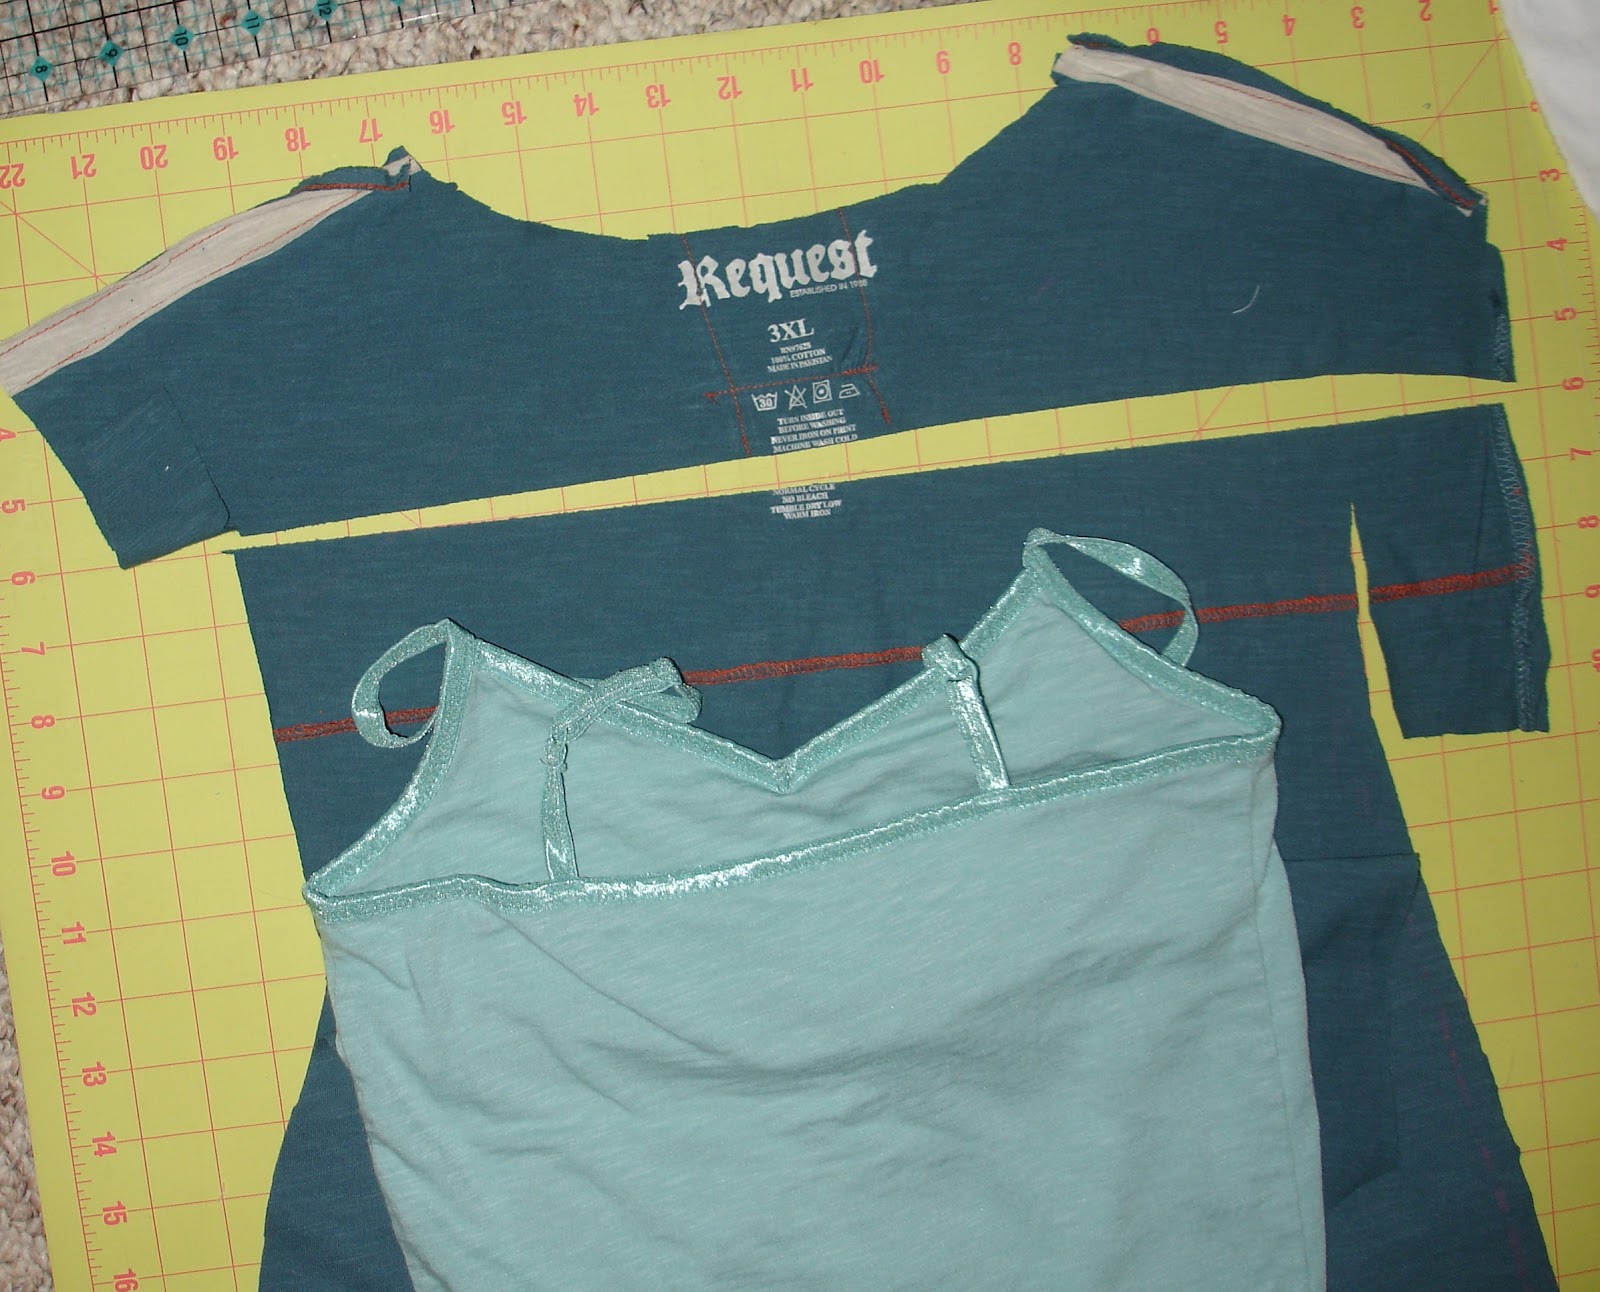 Sleeping Or Sewing: Make a XXXL Mans T-Shirt into a Summer Dress